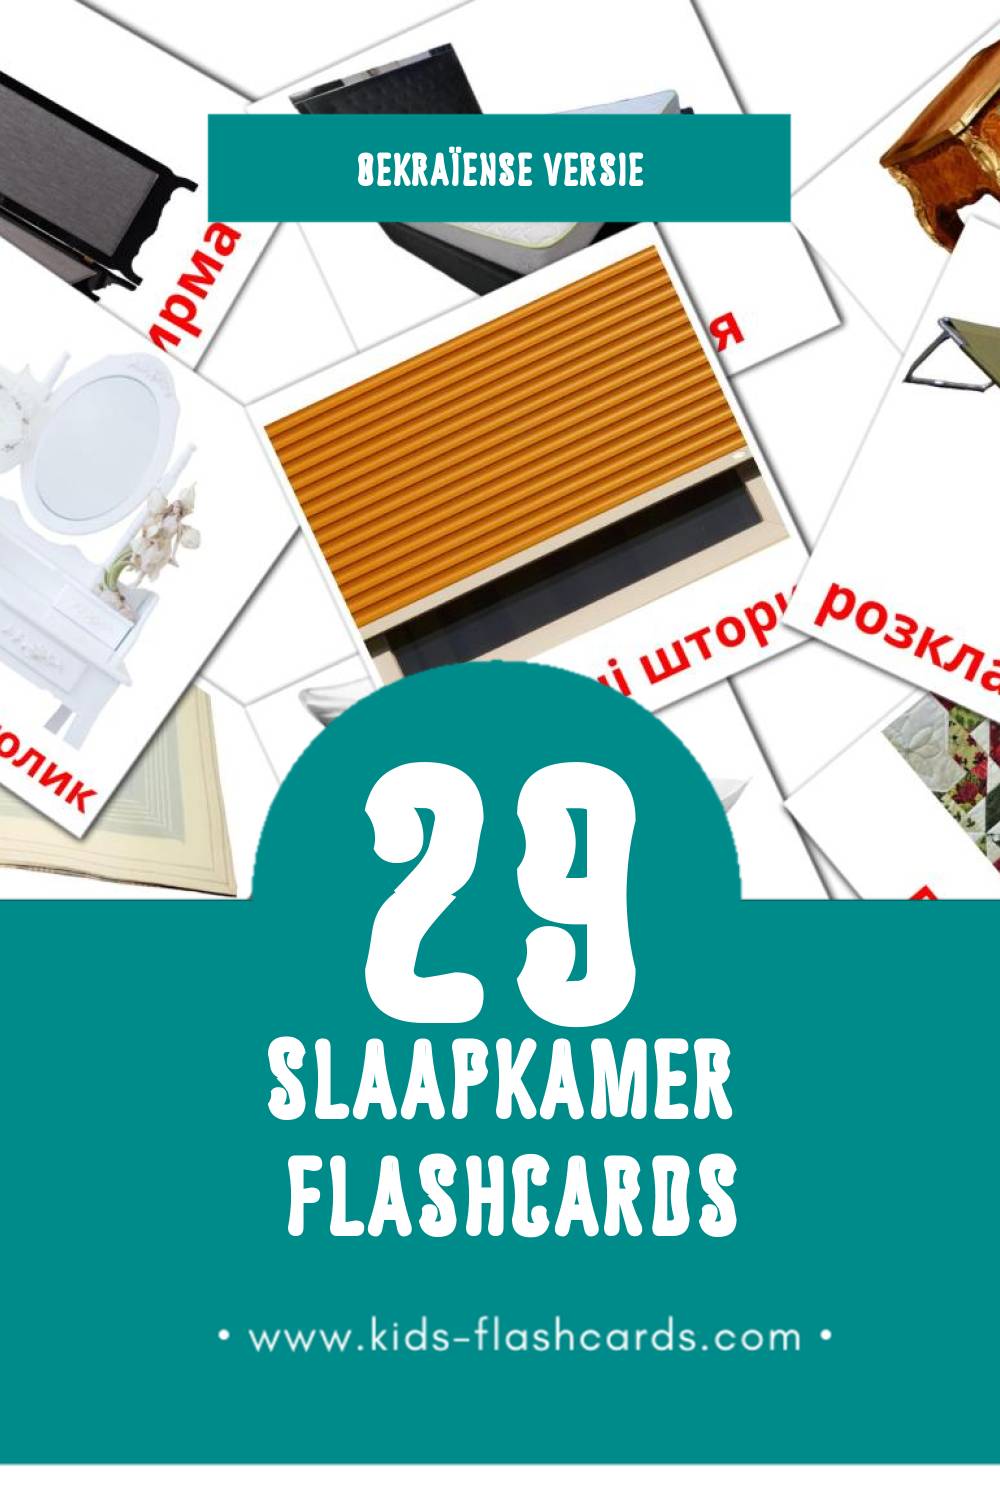 Visuele Спальня Flashcards voor Kleuters (29 kaarten in het Oekraïens)